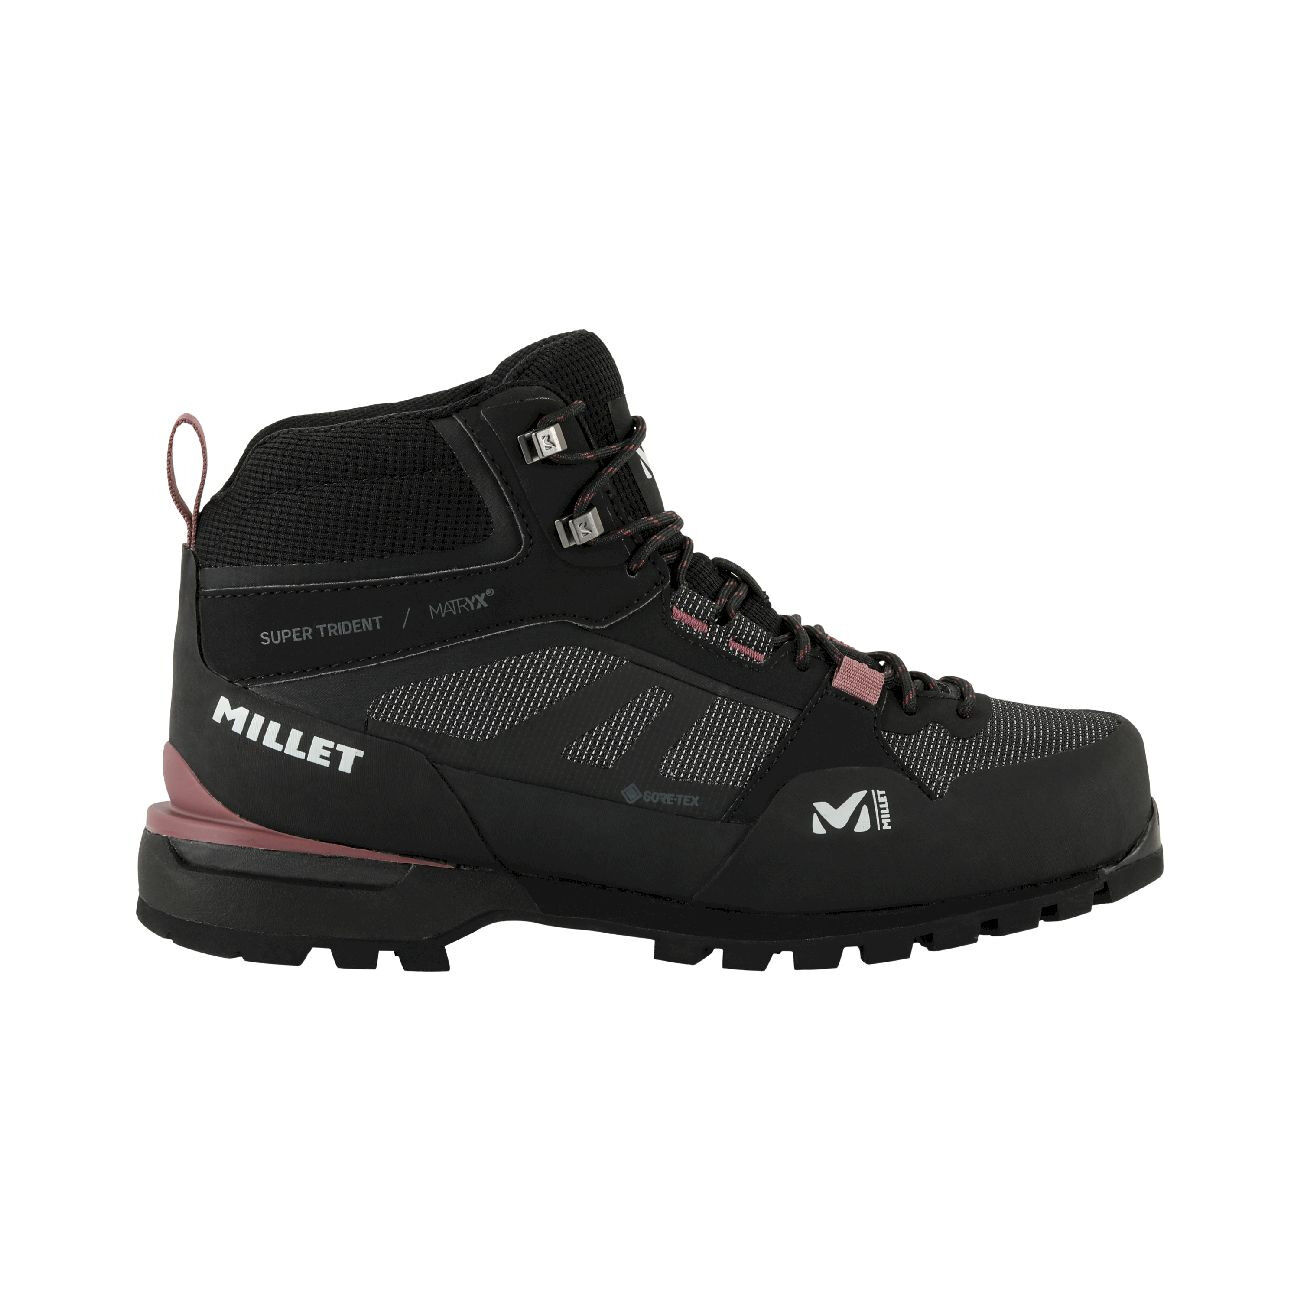 Millet Super Trident Matryx GTX - Approach shoes - Women's